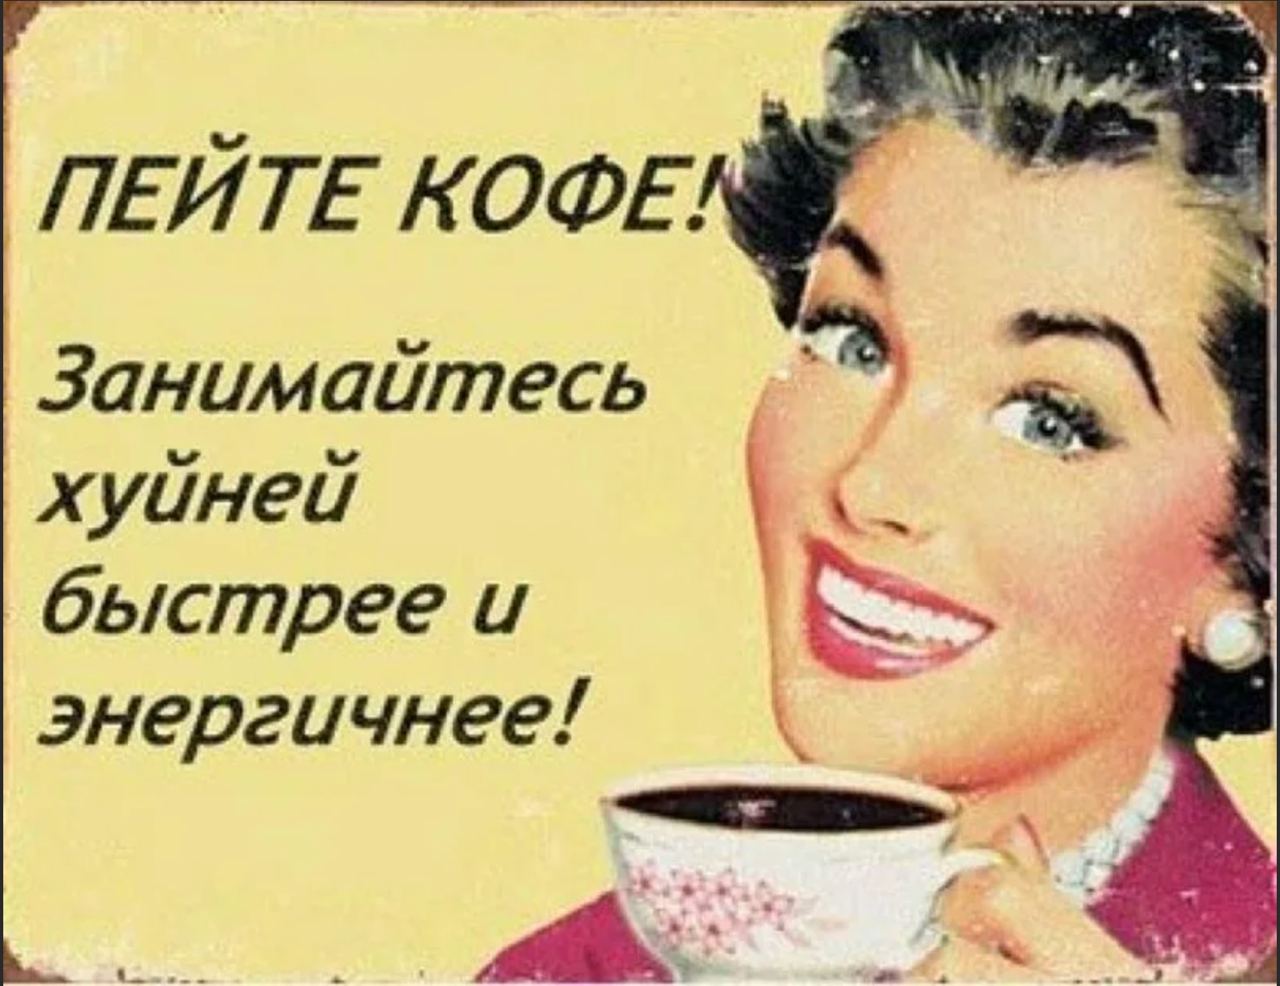 Пошли пить кофе